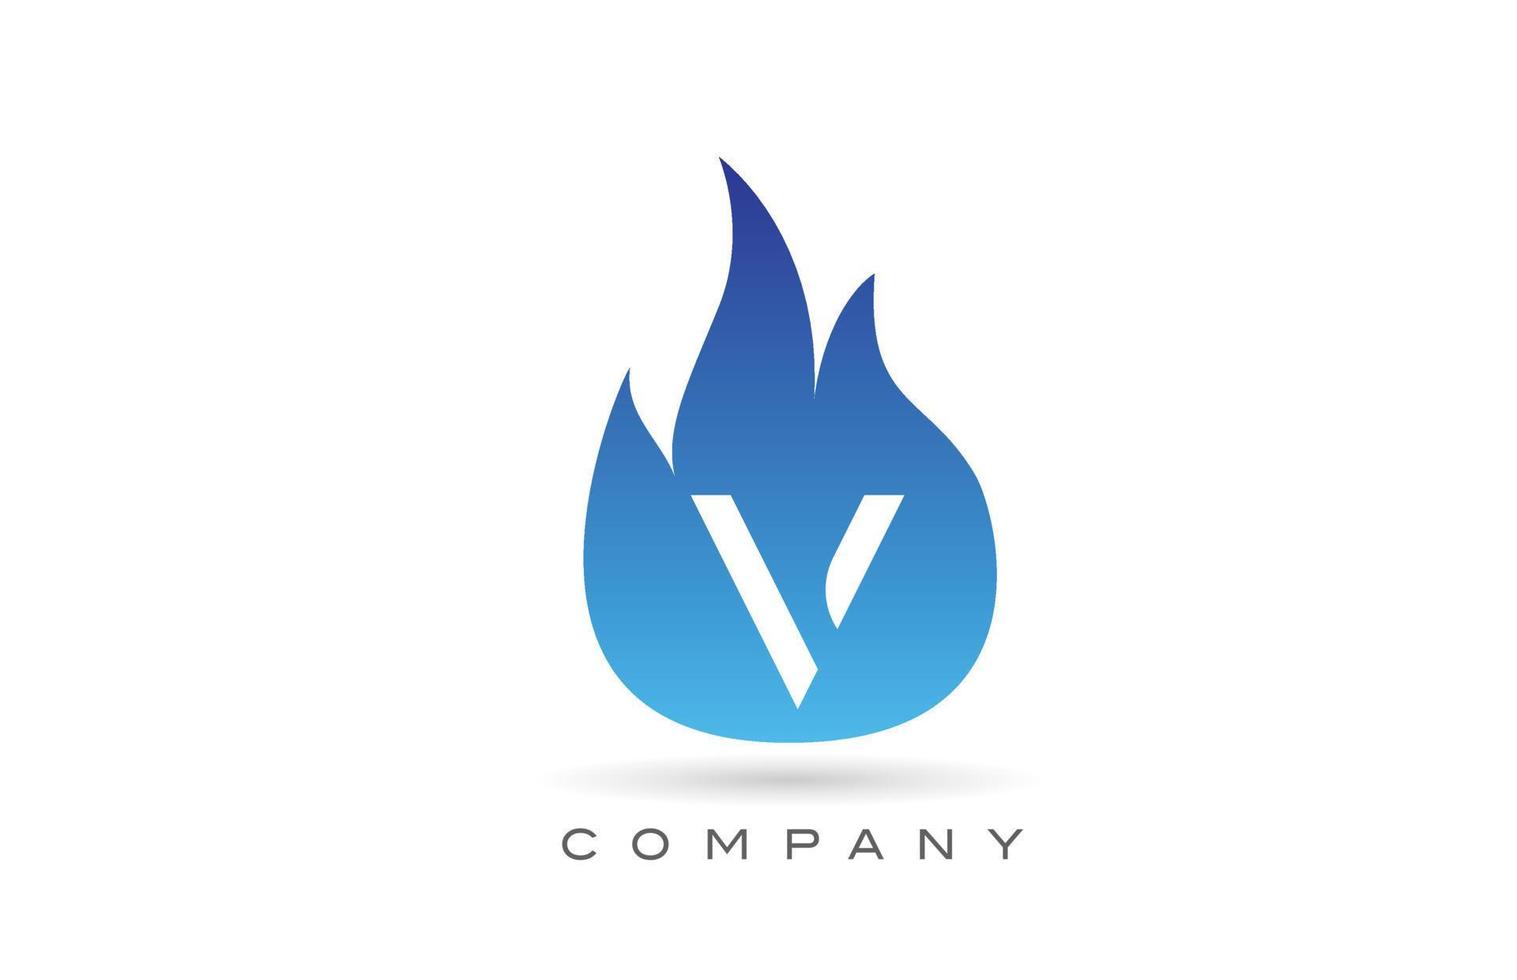 v création de logo de lettre alphabet flammes de feu bleu. modèle d'icône créative pour entreprise et entreprise vecteur